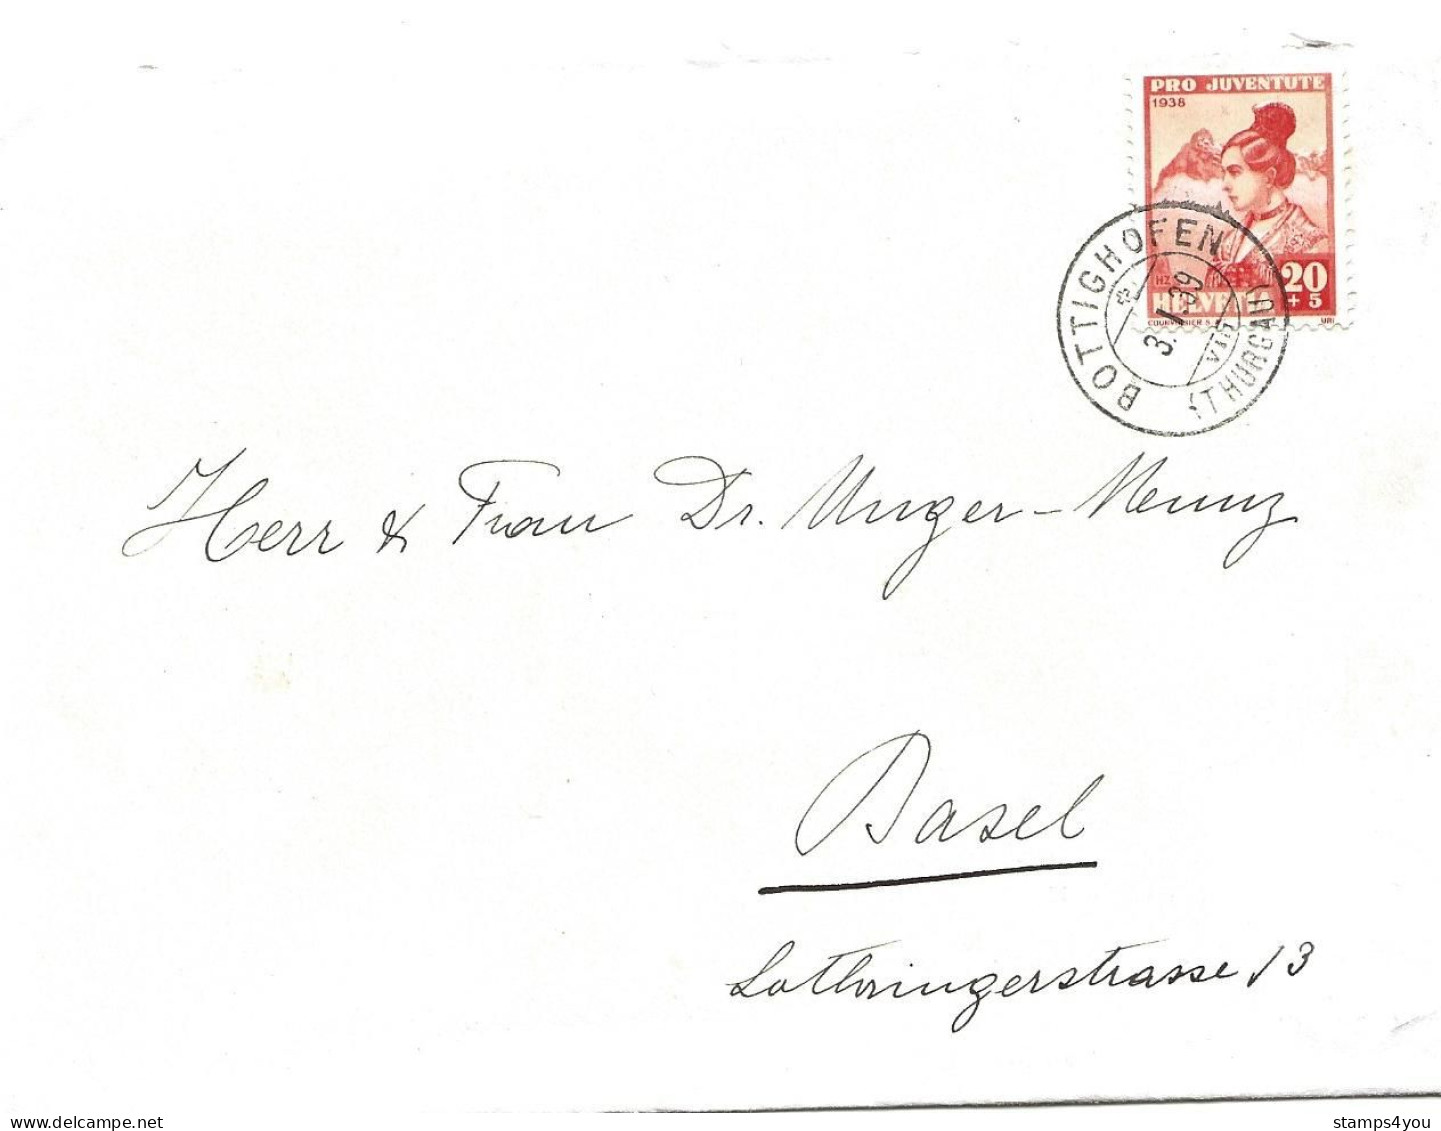 79 - 18 - Enveloppe Avec Timbre Pro Juventute 1938 - Superbe Cachet à Date Bottighofen 1939 - Covers & Documents